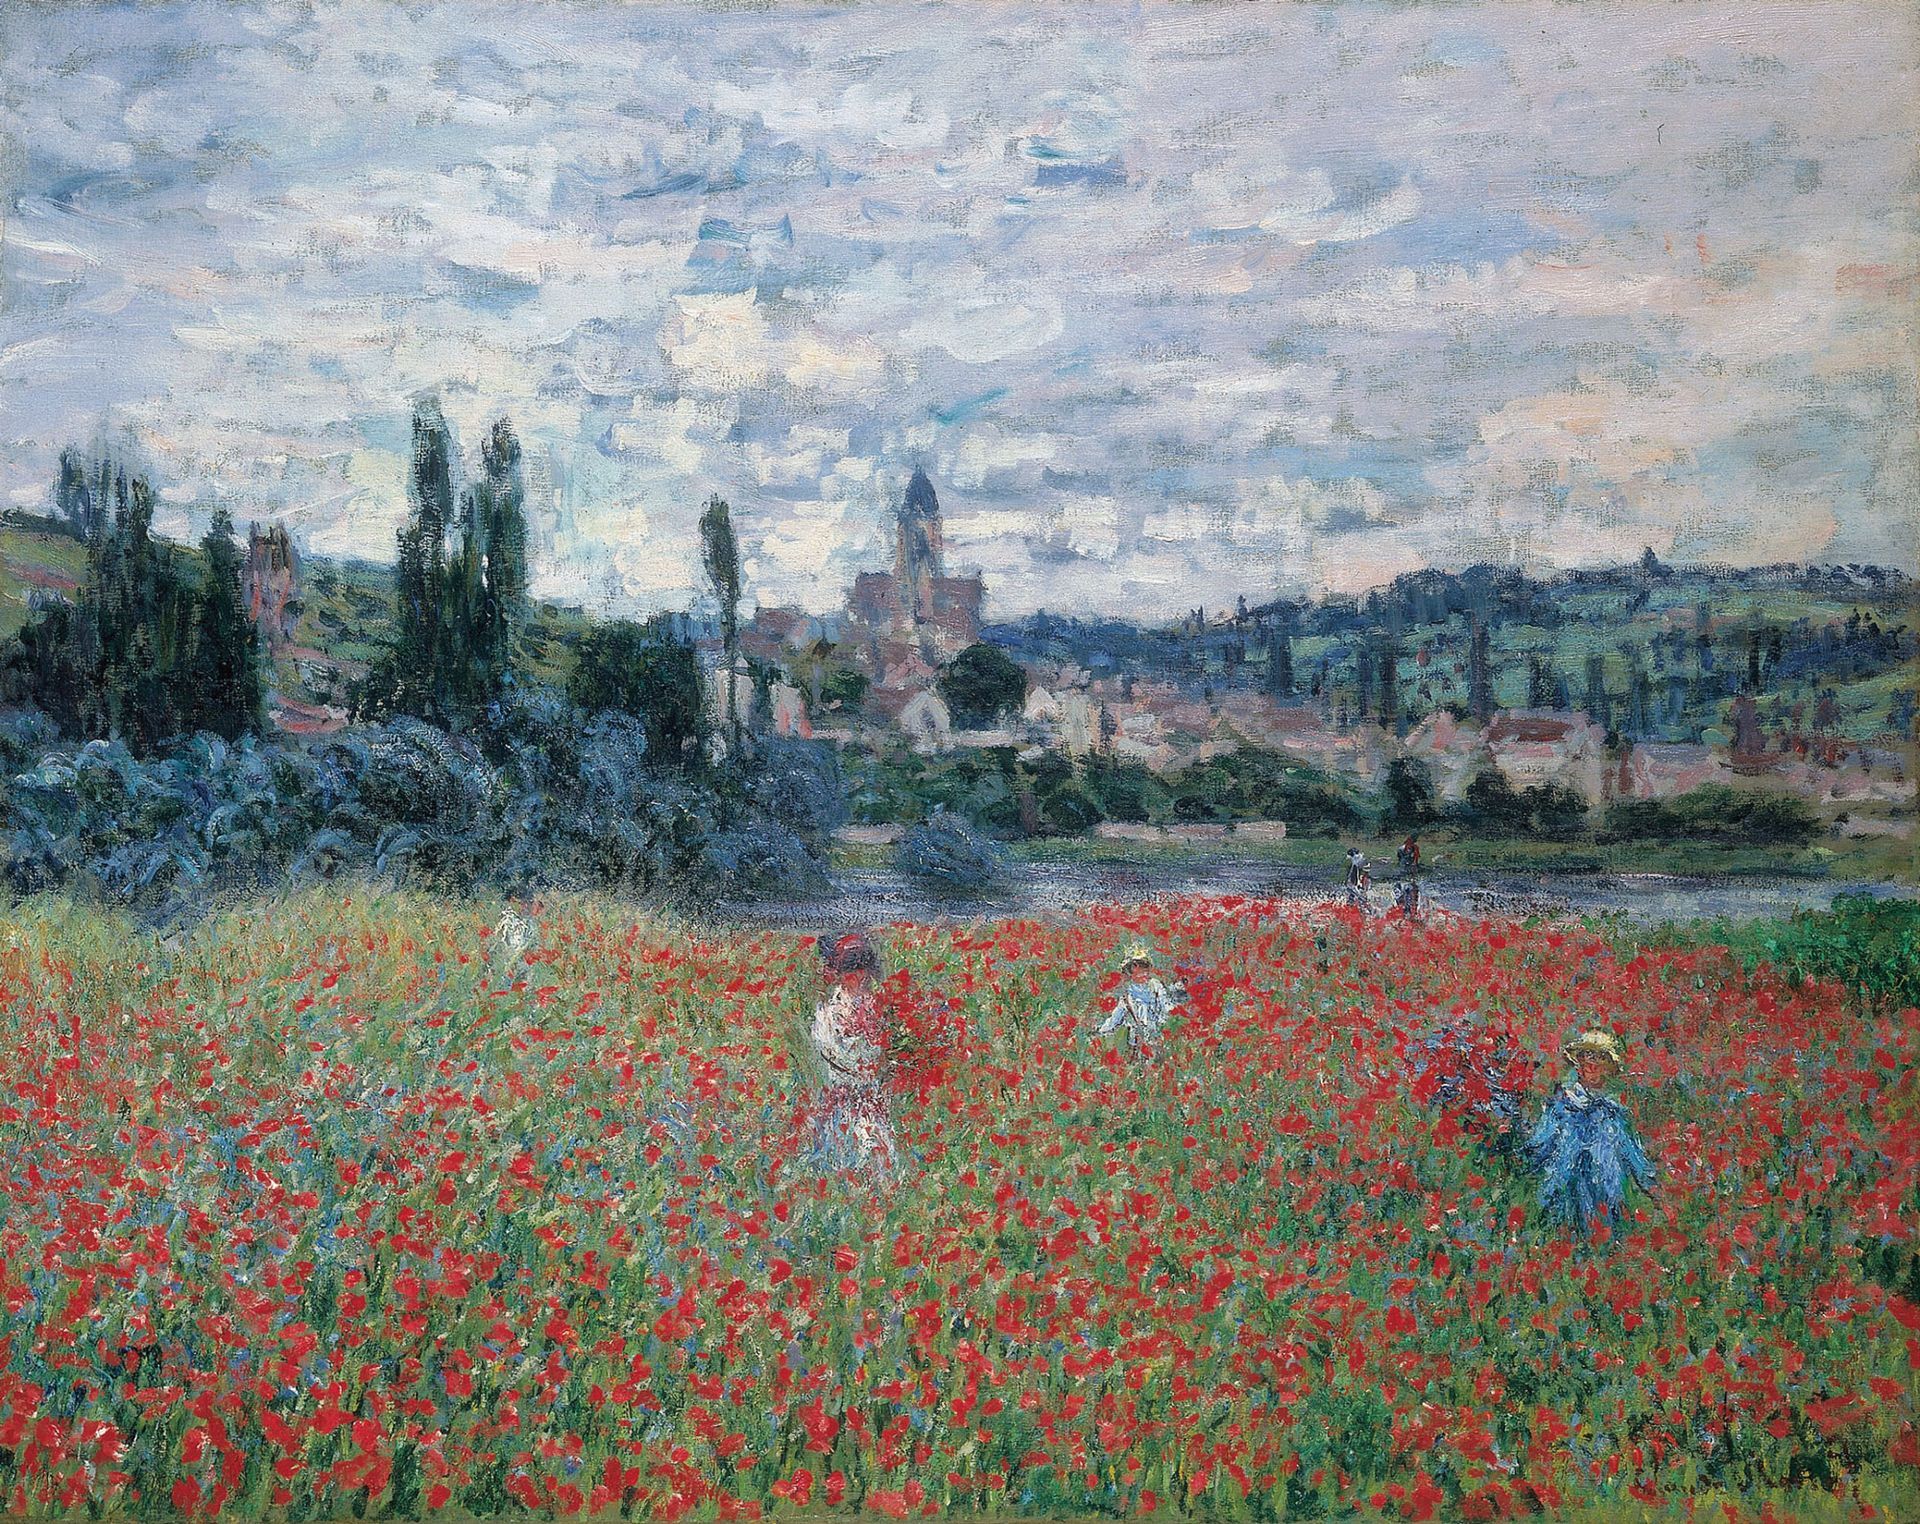 Poppy Field Near Vétheuil (שדה הפרג ליד וטהויל) בסביבות 1879, אחת מיצירות המופת האימפרסיוניסטיות שהושאלה לקונסטהאוס ציריך כחלק מאוסף Bührle השנוי במחלוקת

אוסף אמיל בורל


